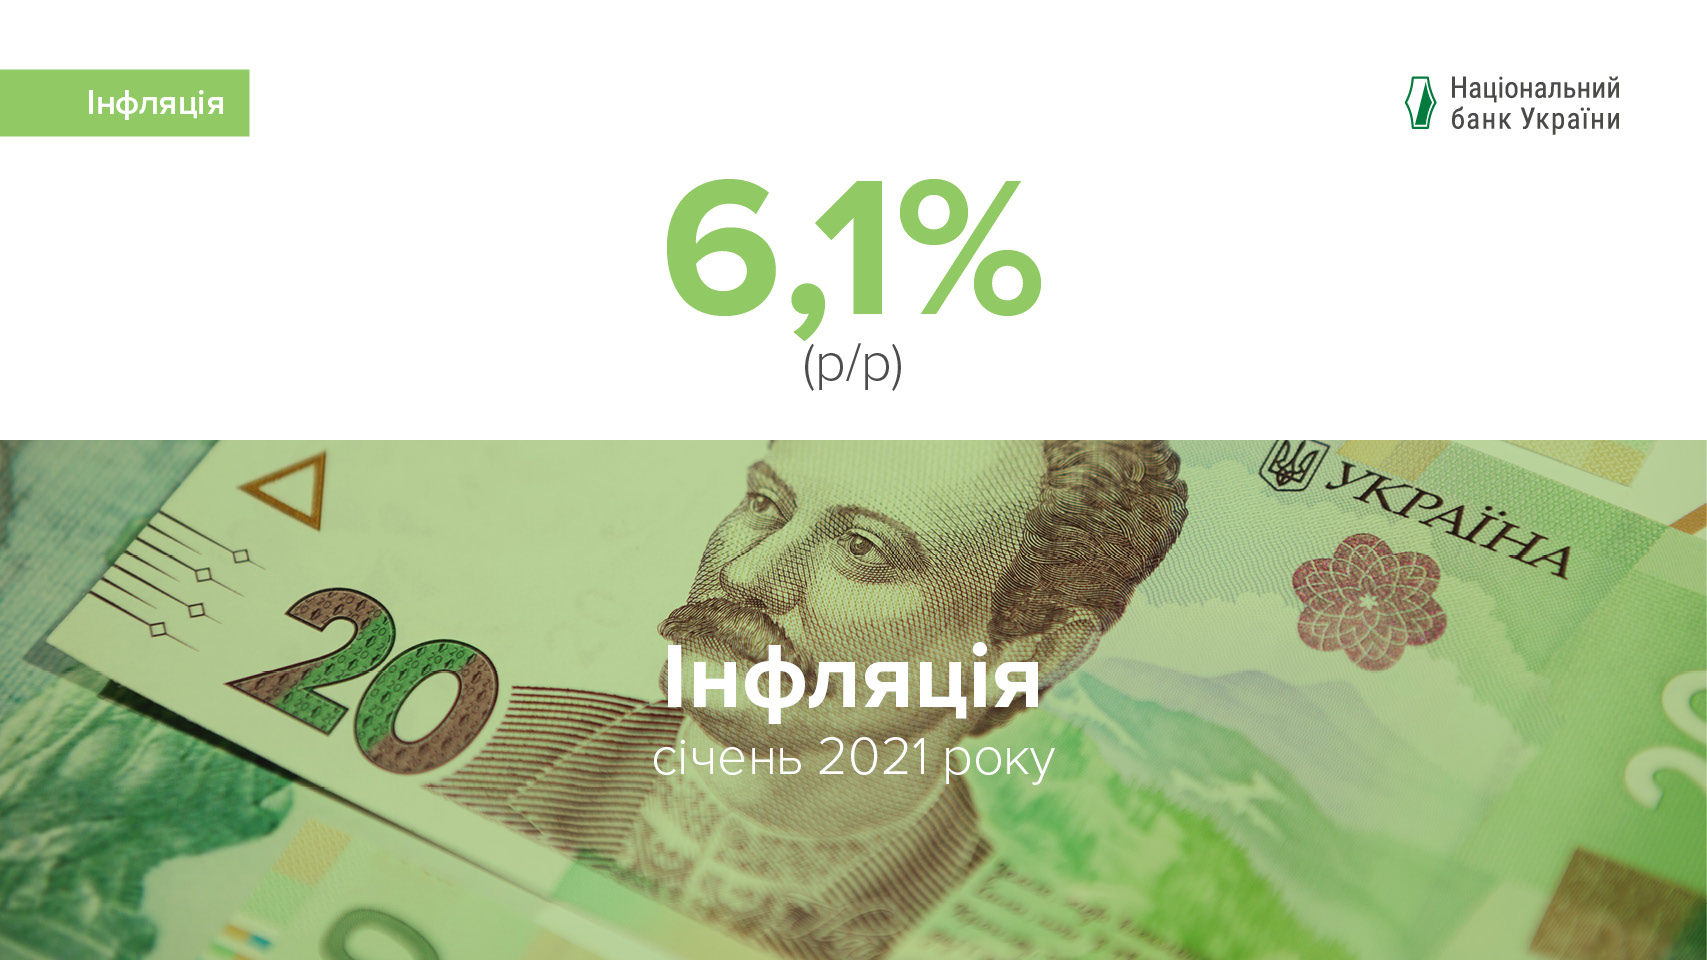 Коментар Національного банку щодо рівня інфляції в січні 2021 року